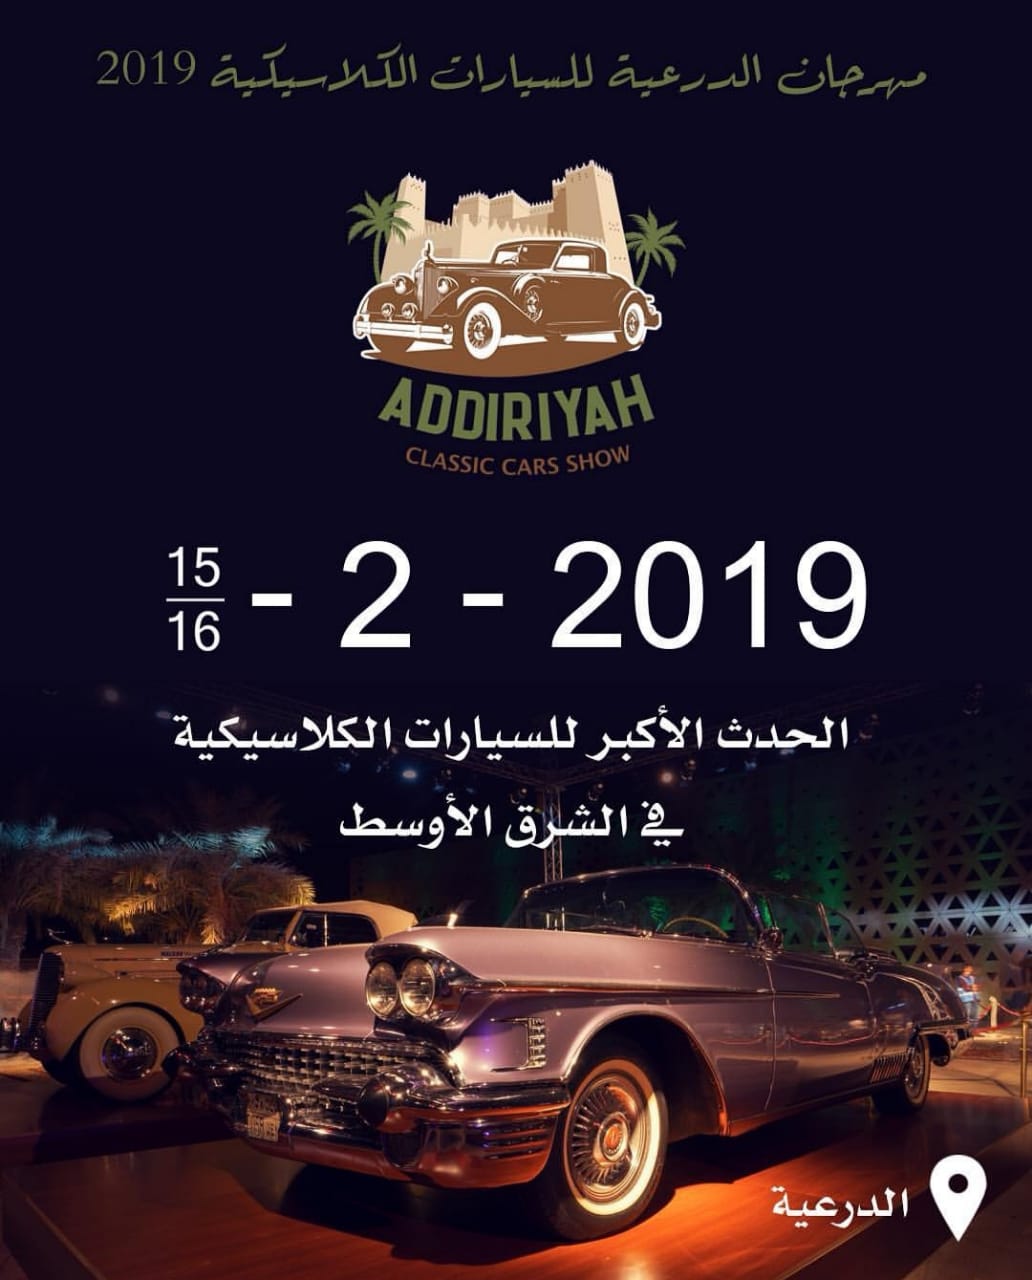 Classic Car Show - Riyadh